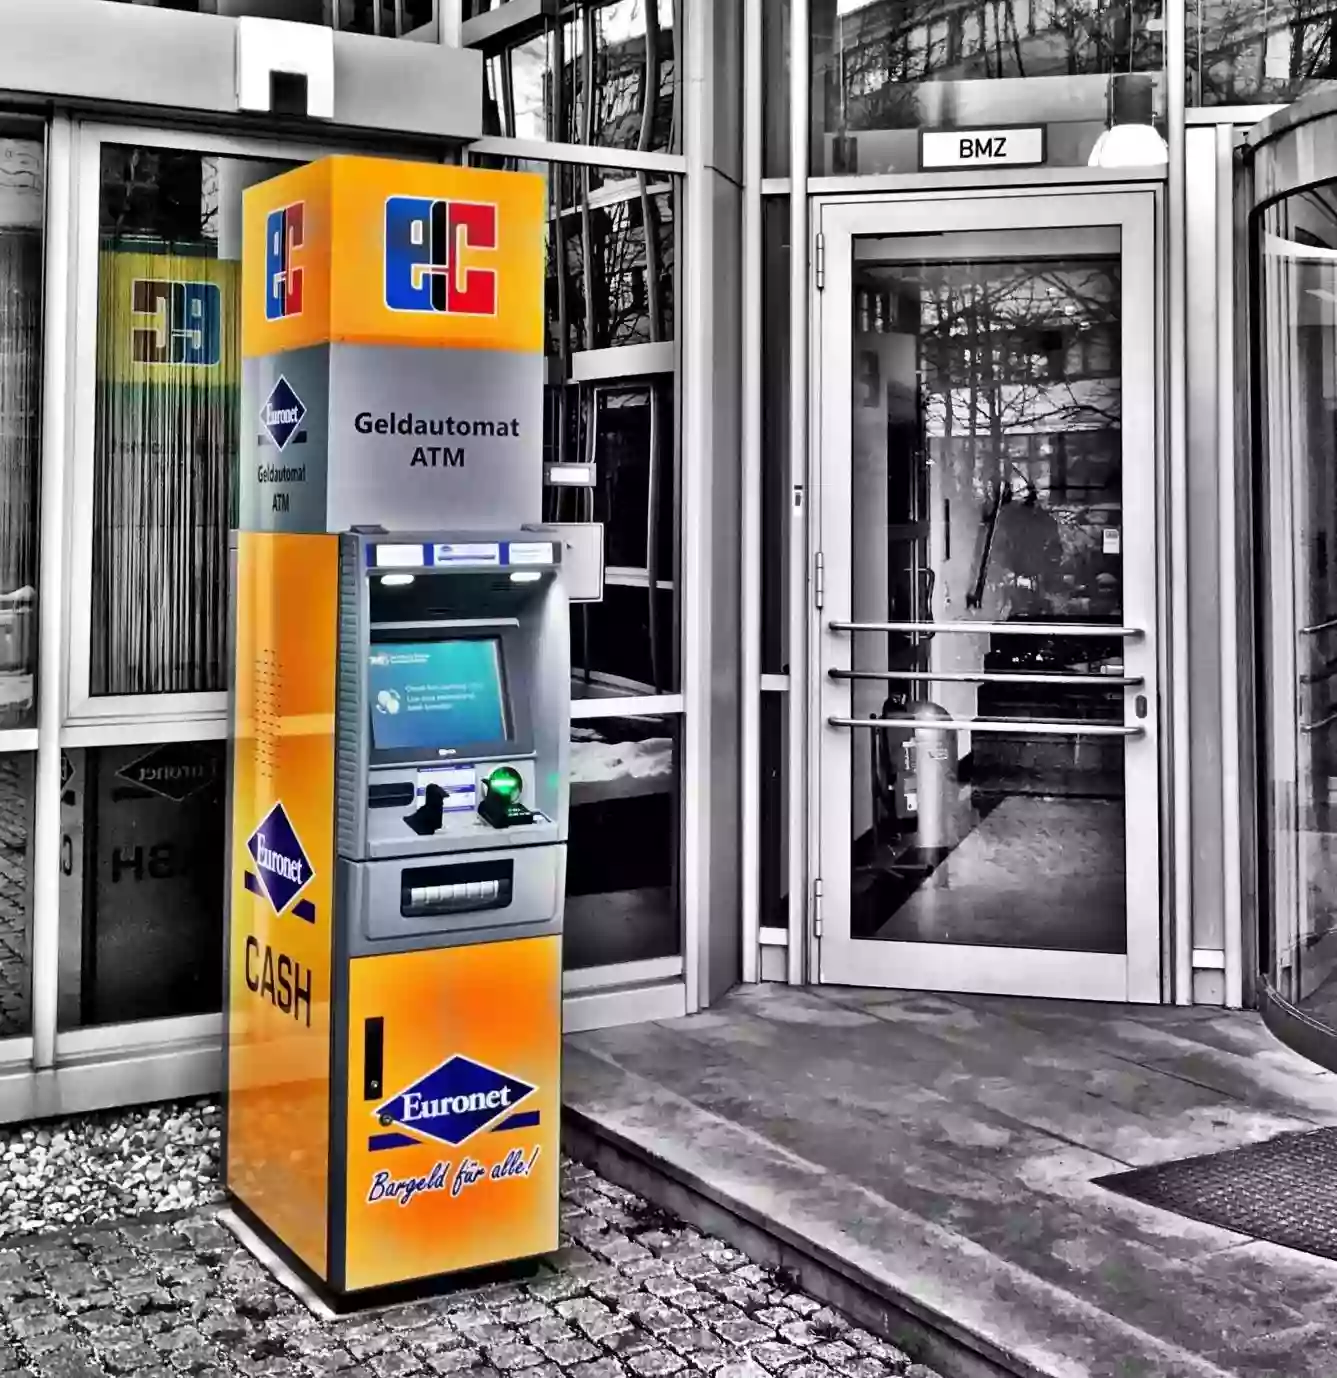 Euronet - Geldautomat - ATM